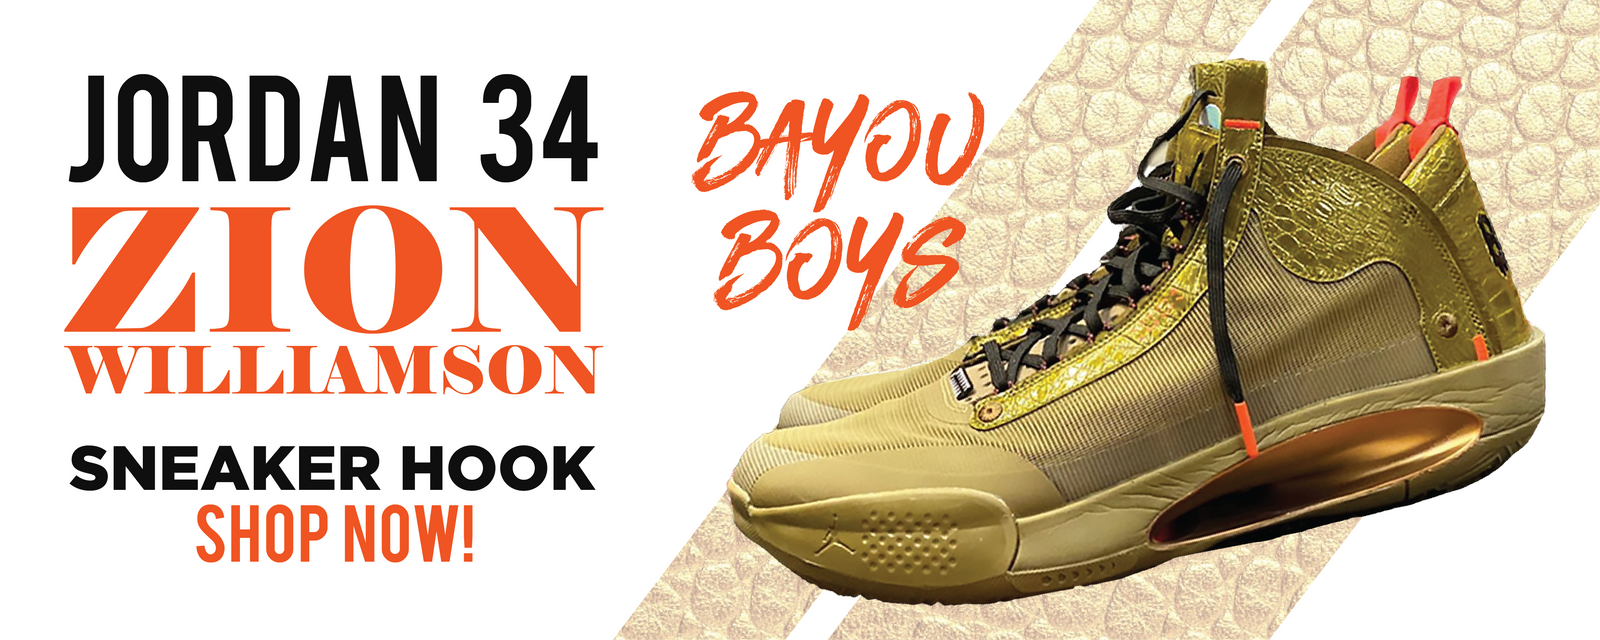 zion shoes bayou